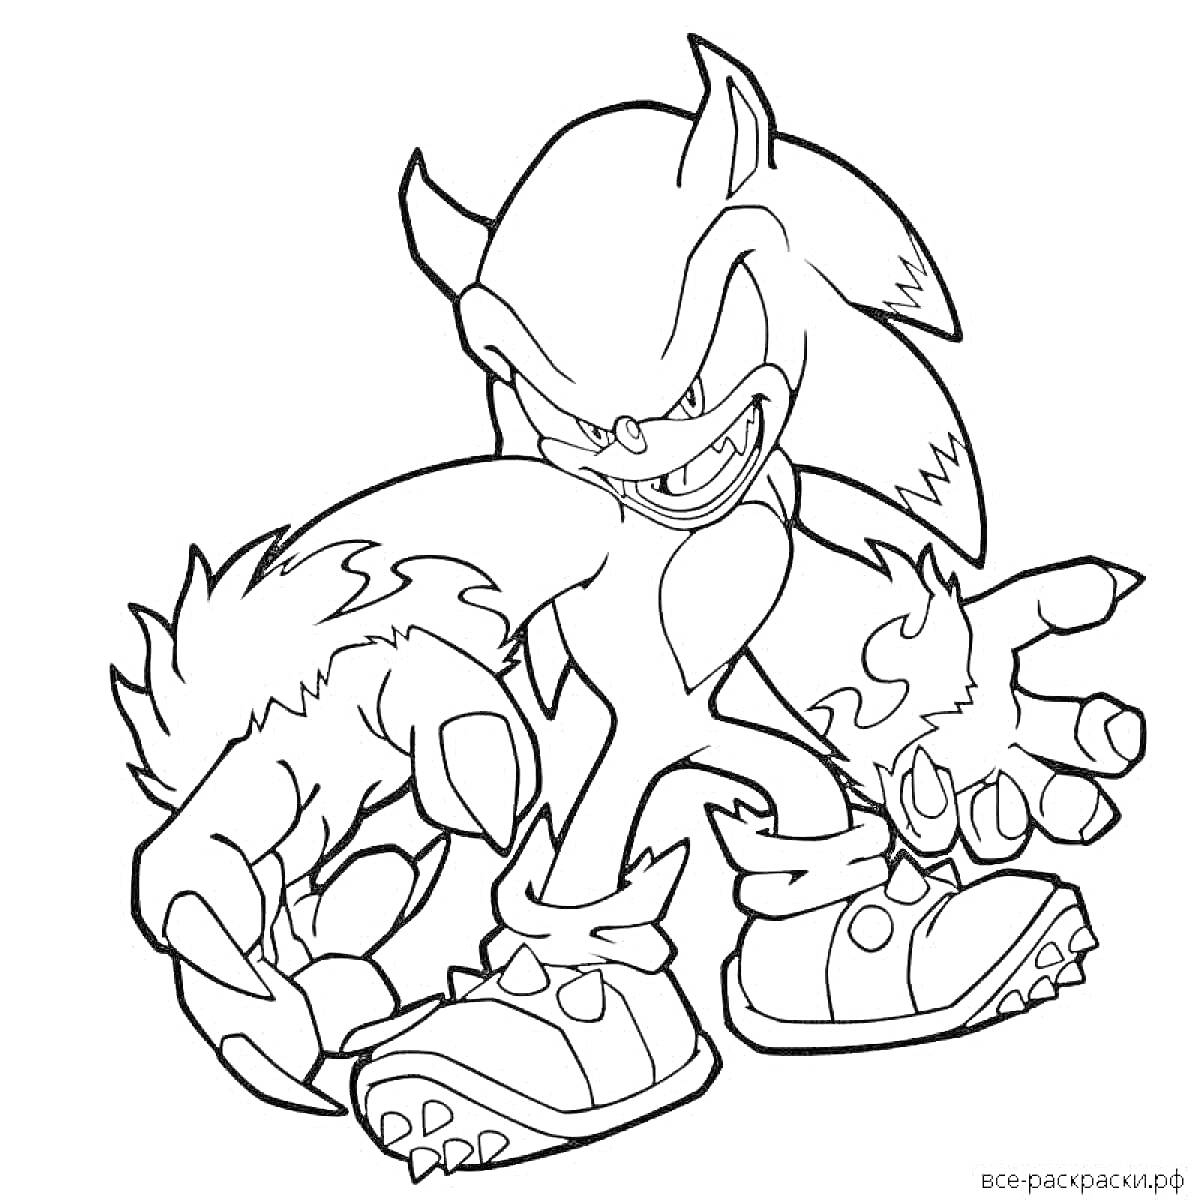 Ежик с агрессивным выражением лица и когтями, персонаж мультфильма 